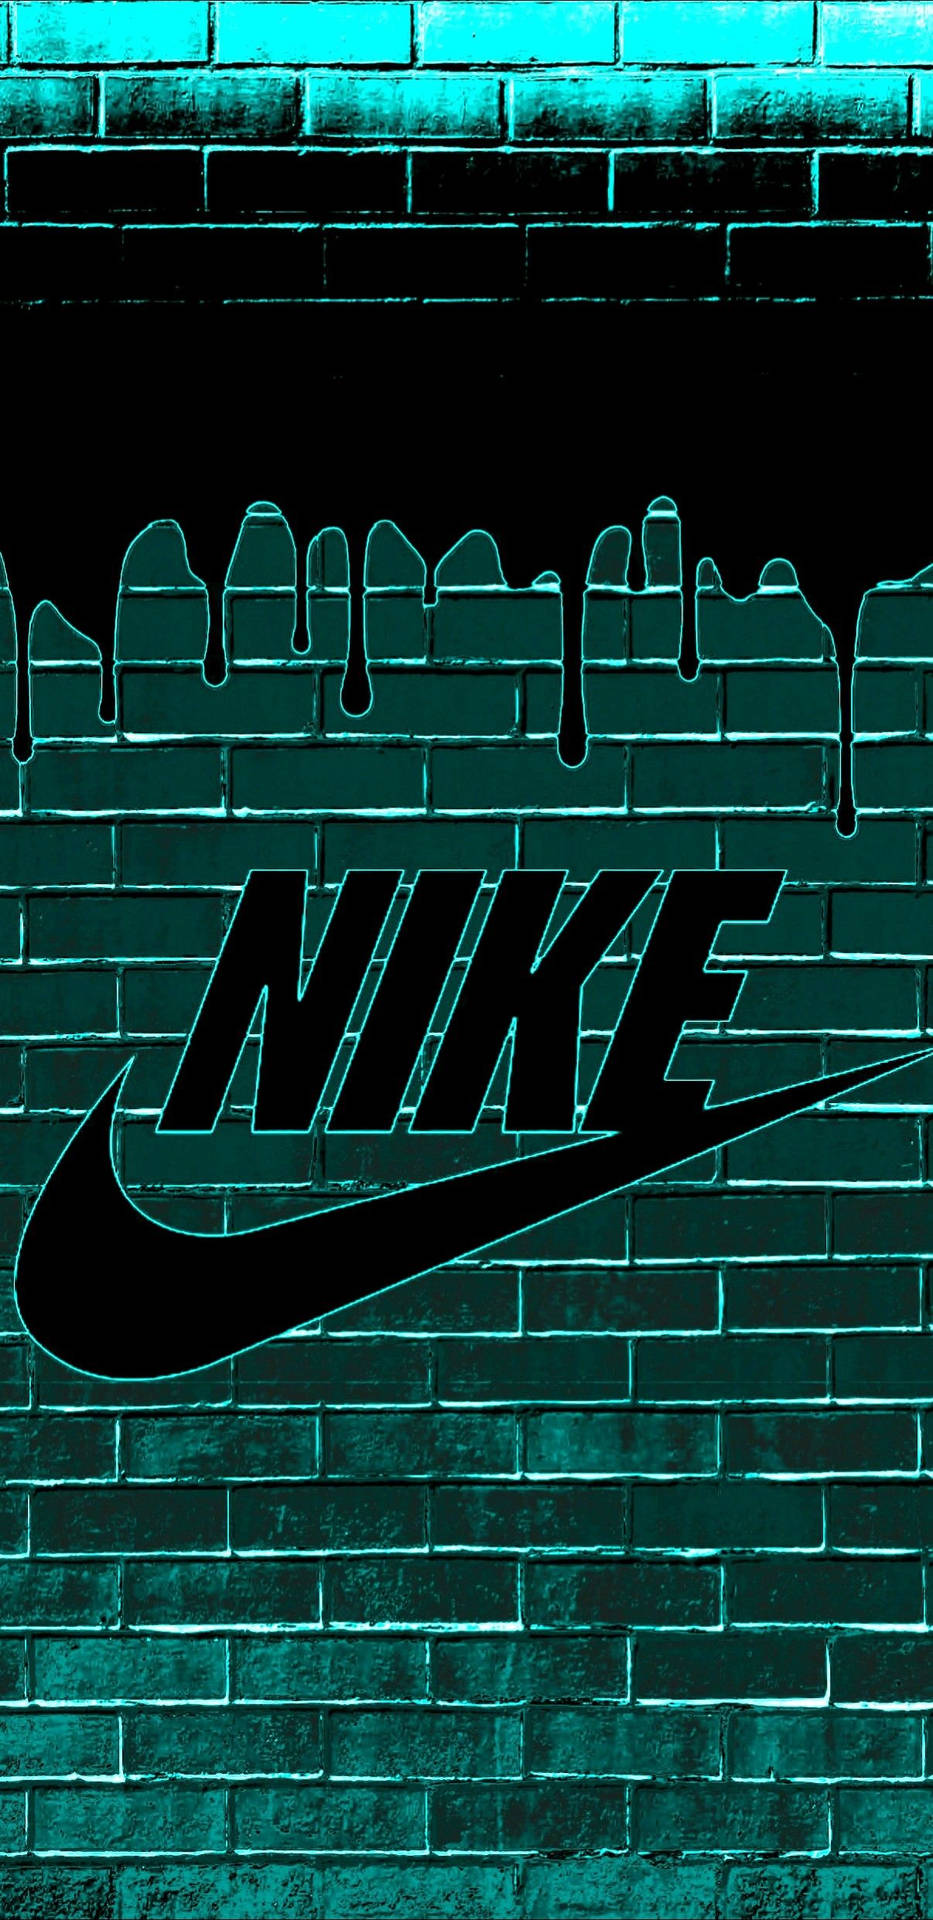 Logode Nike En Una Pared De Ladrillos Con Efecto De Goteo. Fondo de pantalla